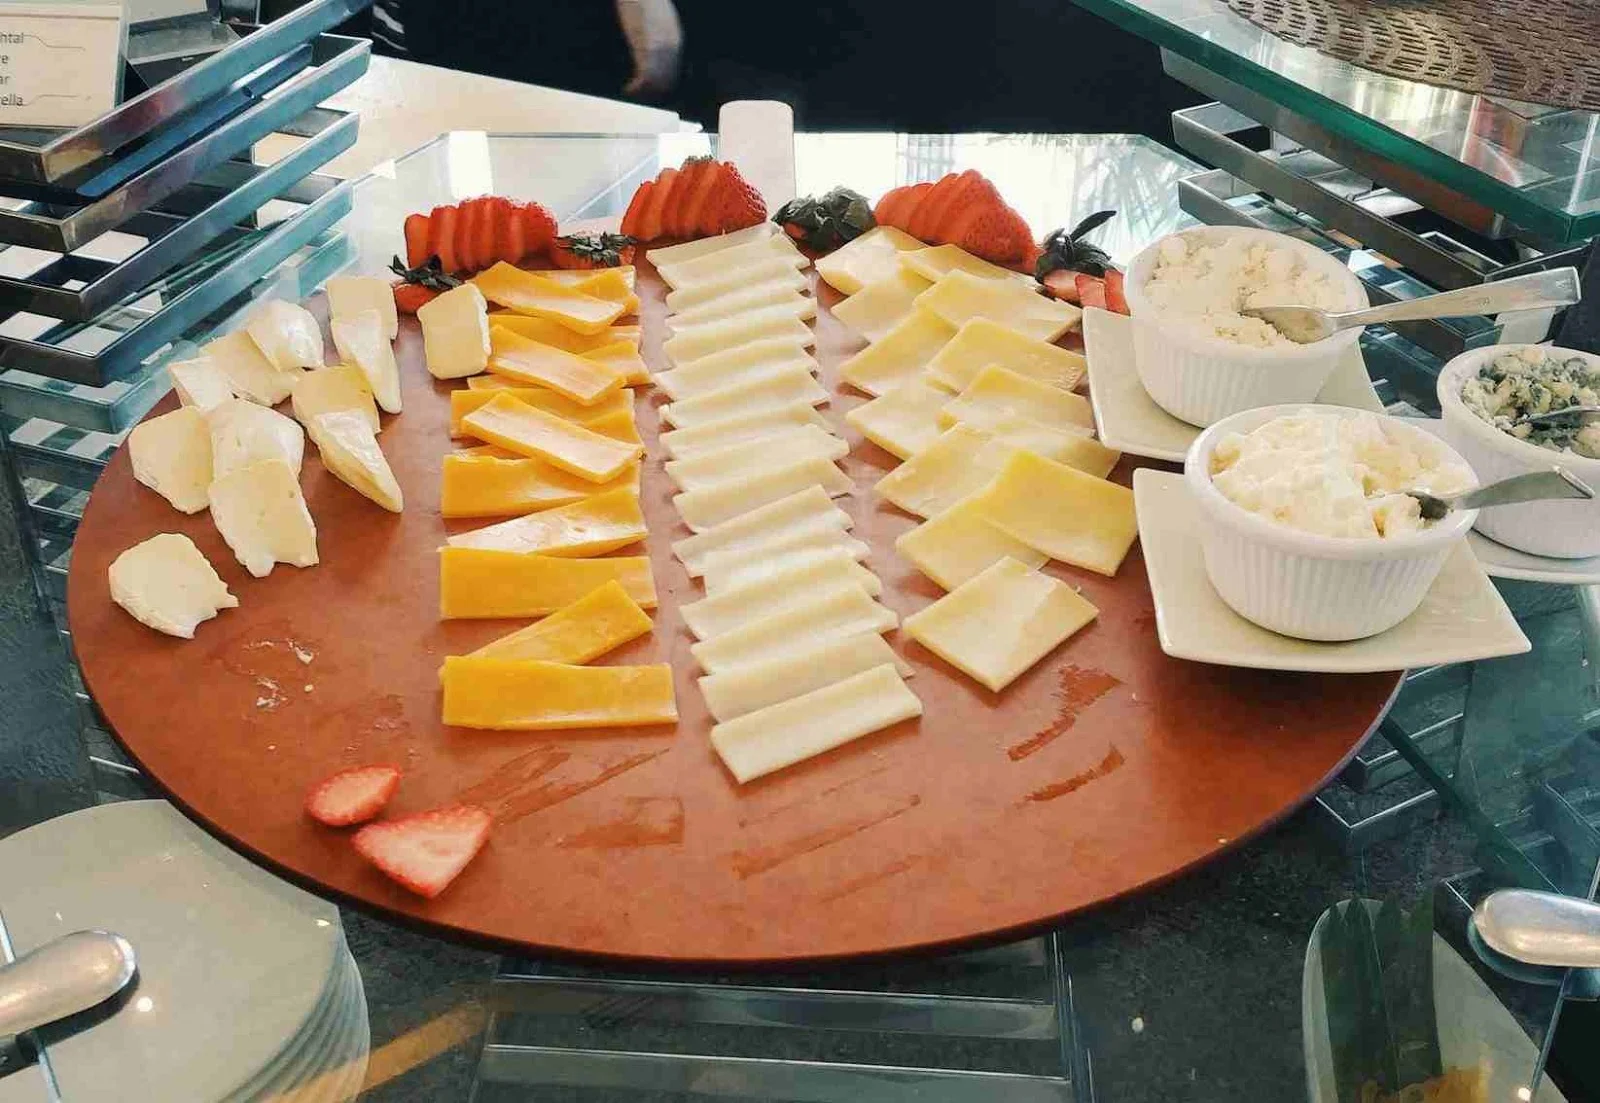 Cheese board at Acaci Cafe in Acacia Hotel